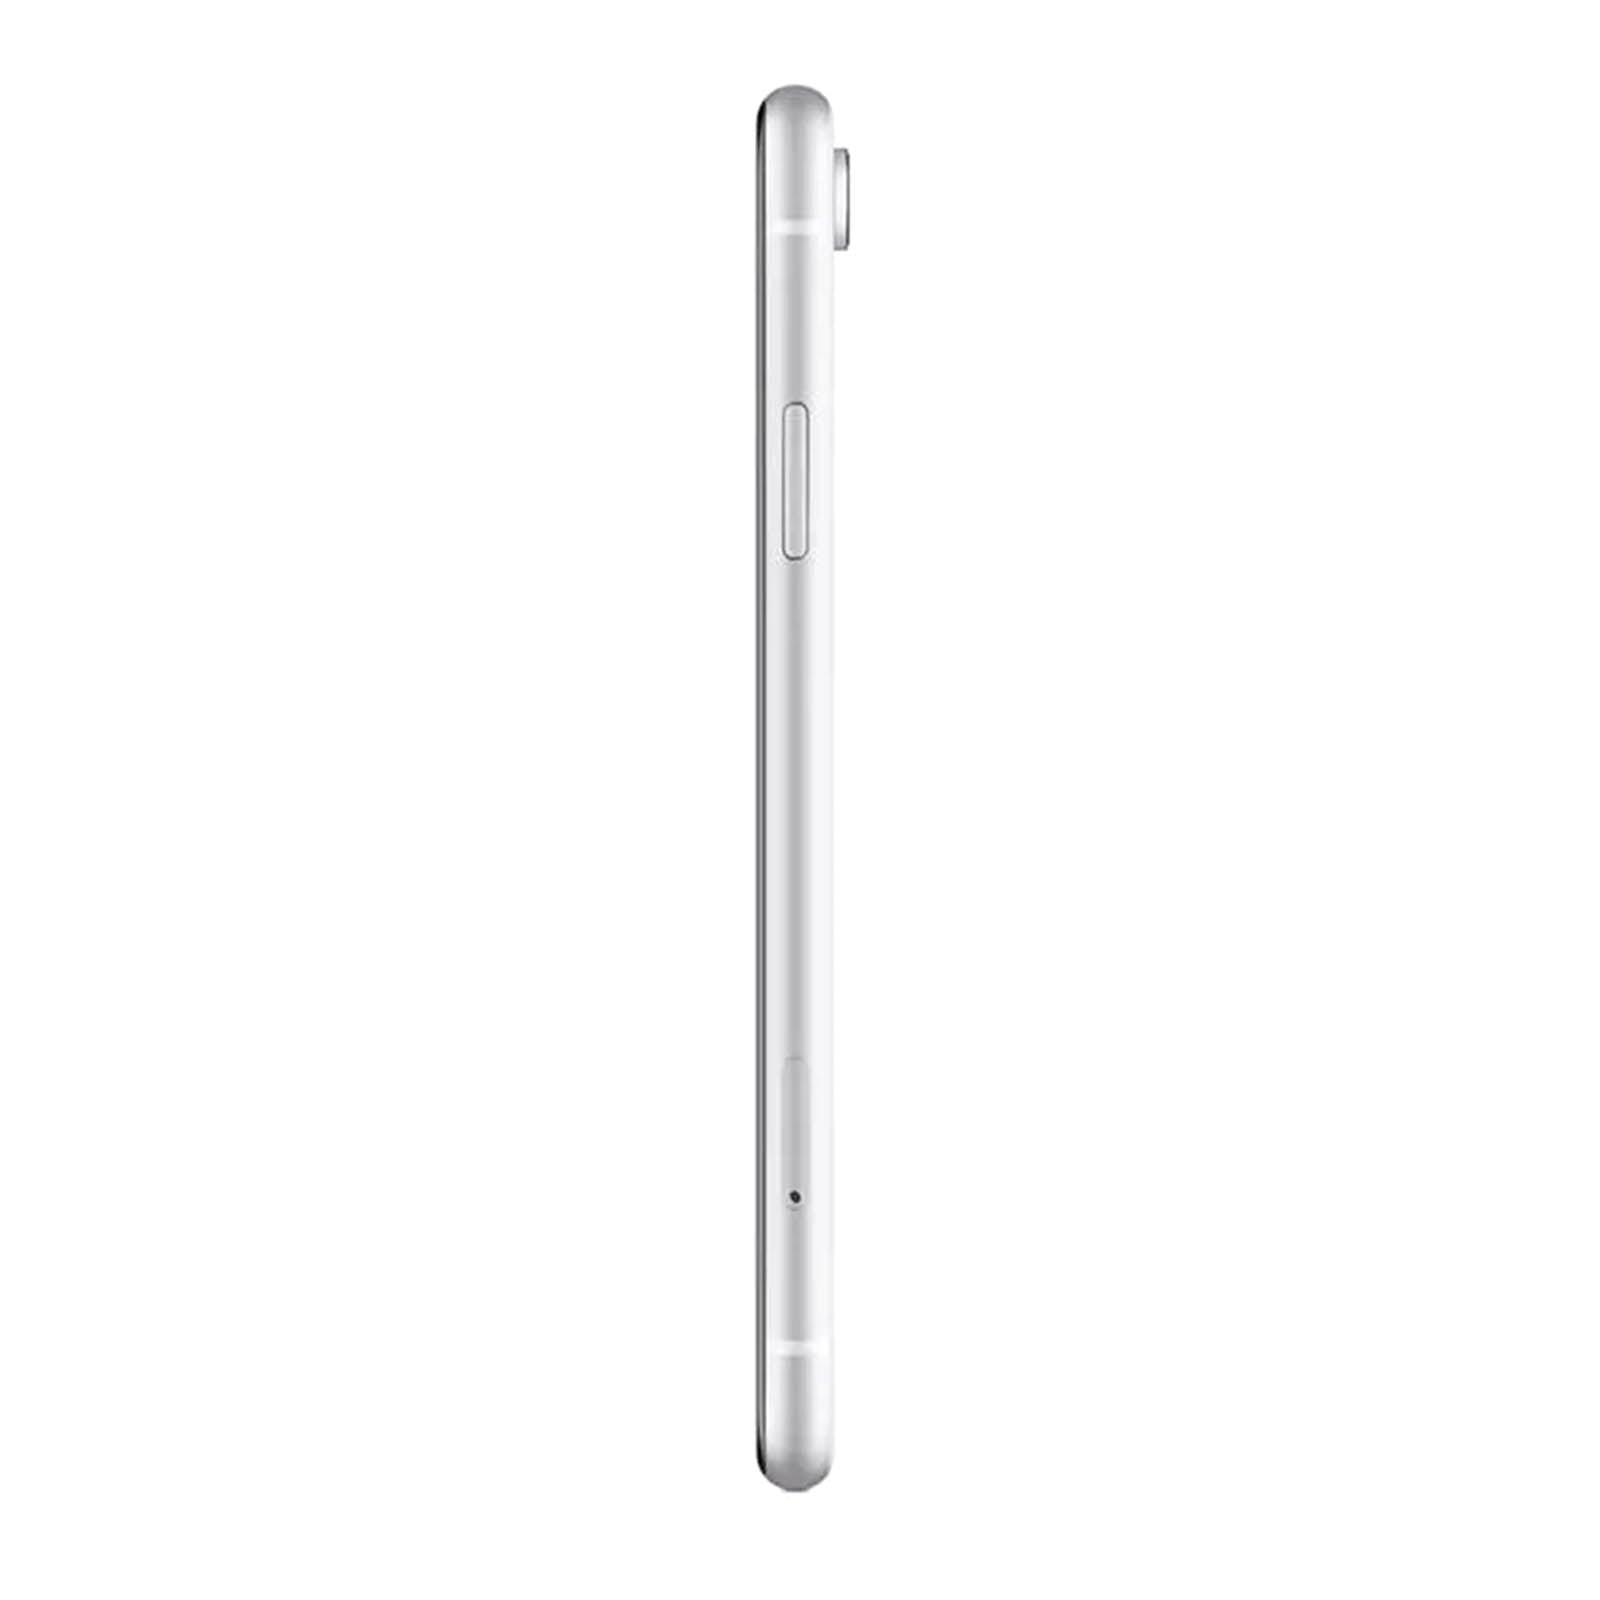 Apple iPhone XR 64GB White Fair - AT&T